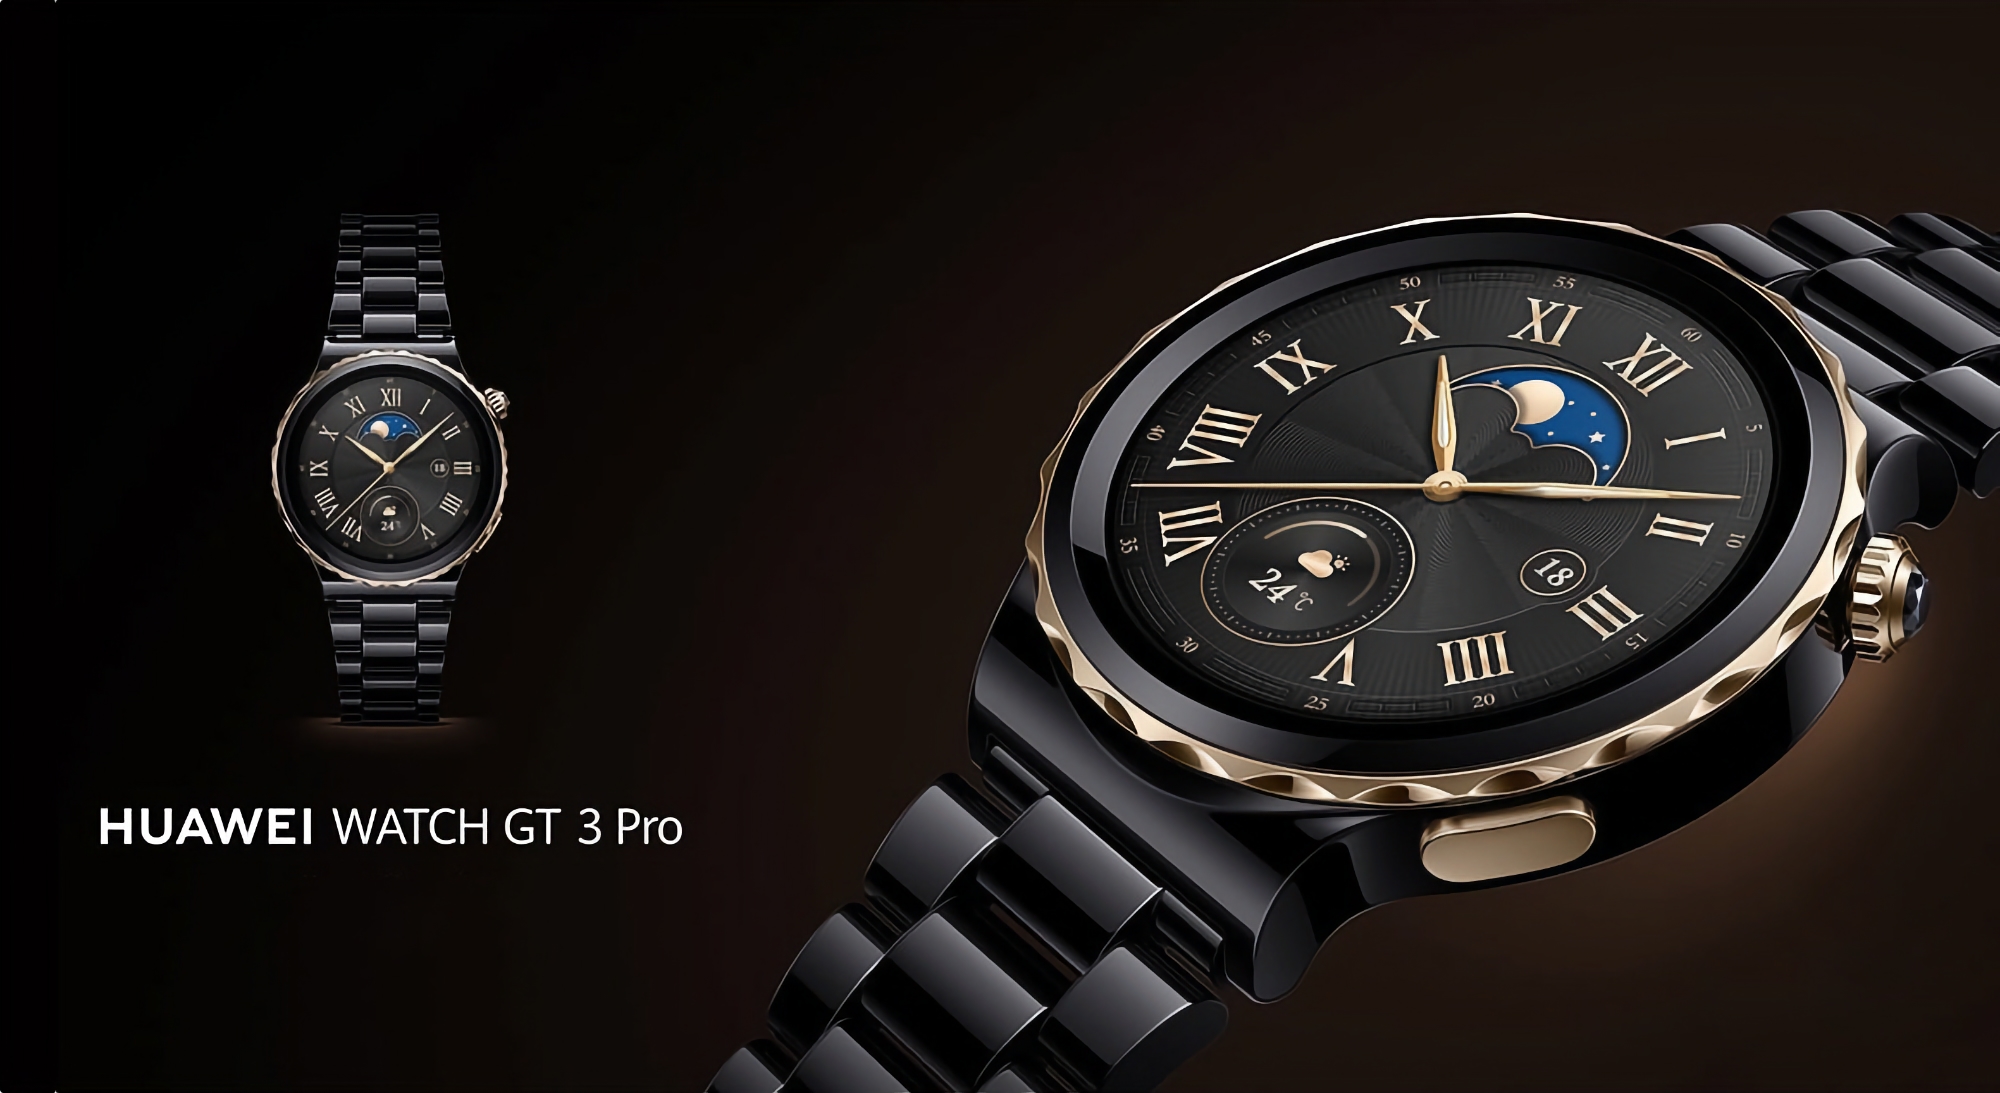 Huawei Watch GT 3 Pro fick uppdatering 3.0.0.101: vad är nytt